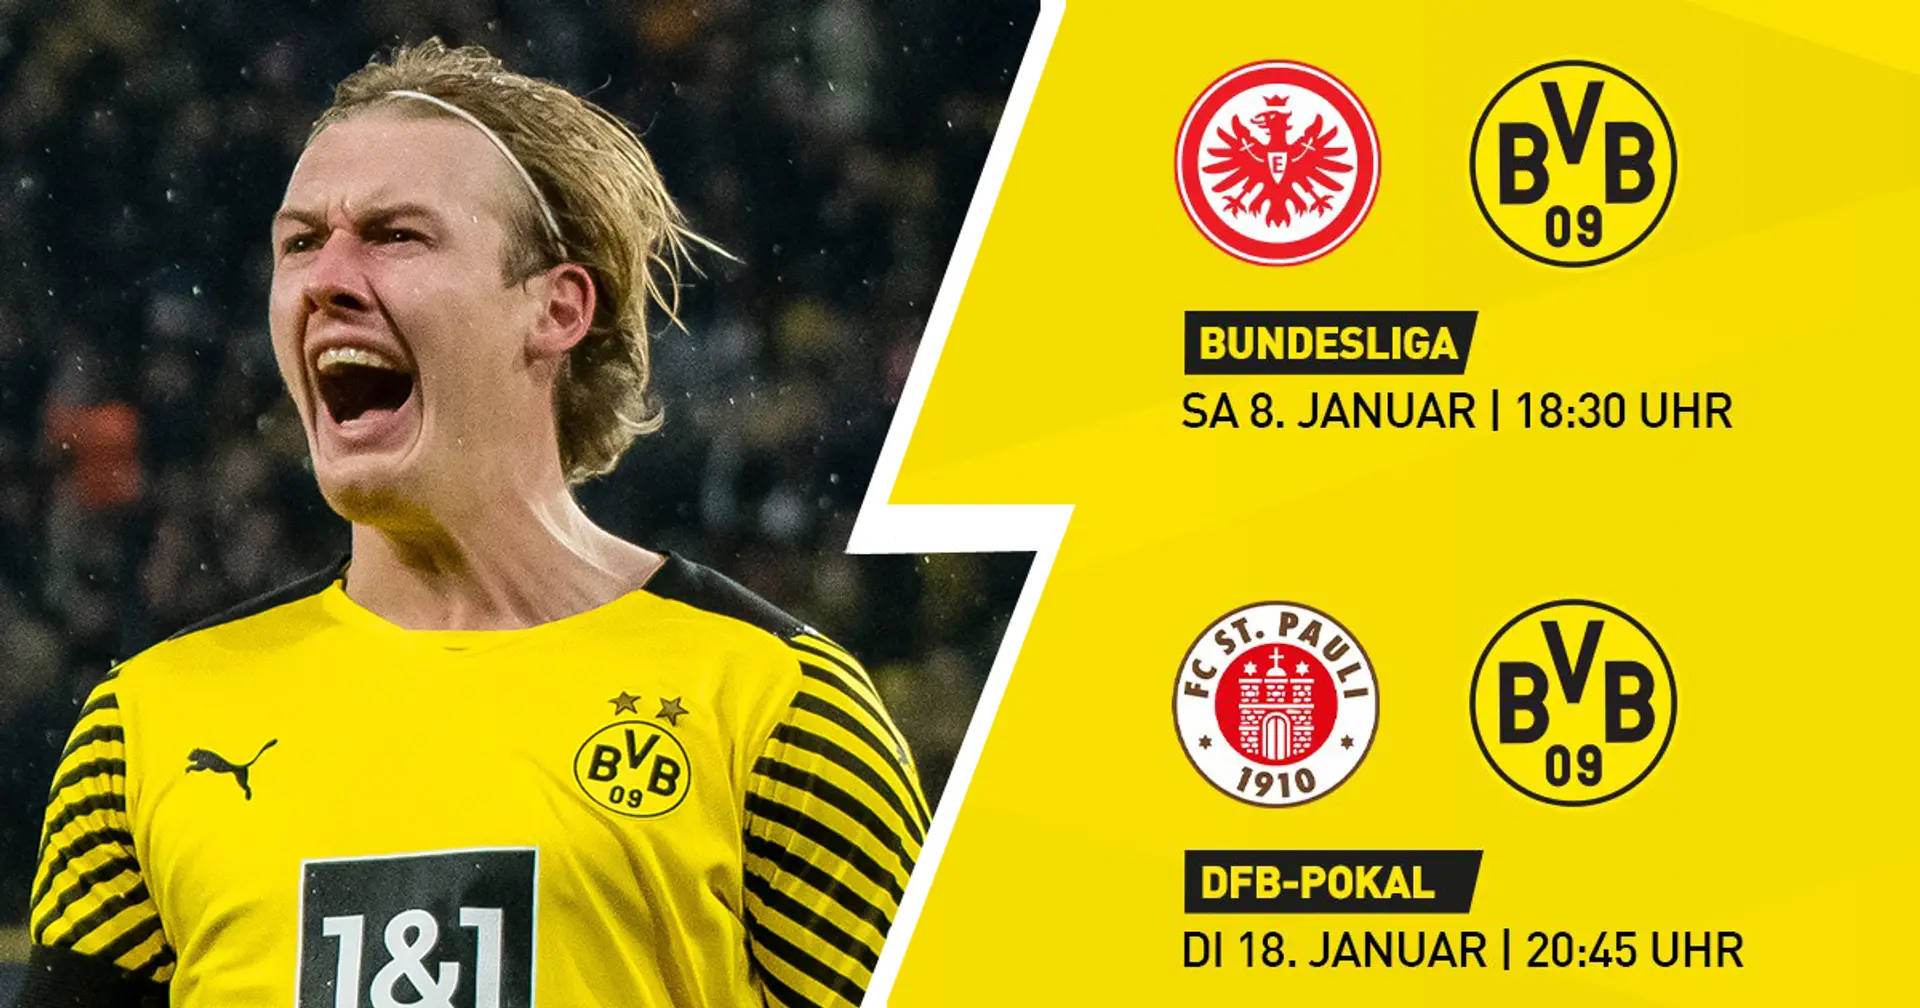 DFB-Pokalspiel, schwierige Reise nach Frankfurt: Spielplan des BVB im Januar